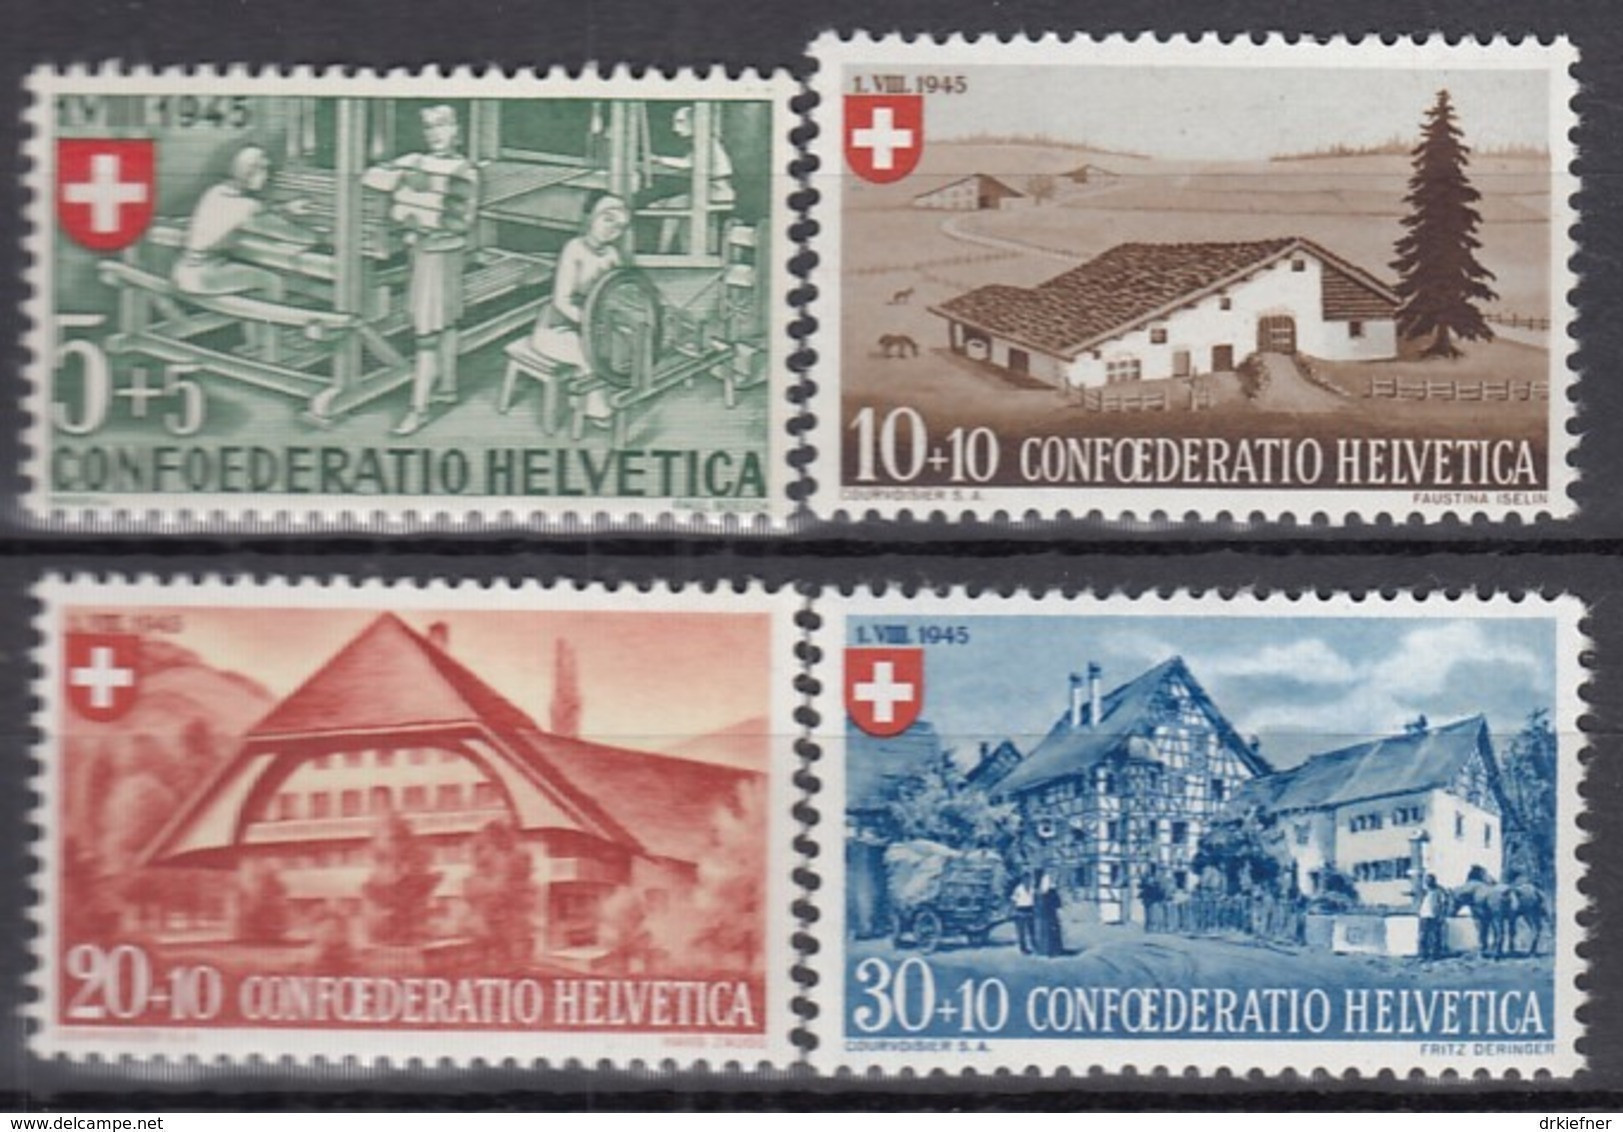 SCHWEIZ  460-463,  Postfrisch **, Pro Patria 1945, Landhäuser - Unused Stamps